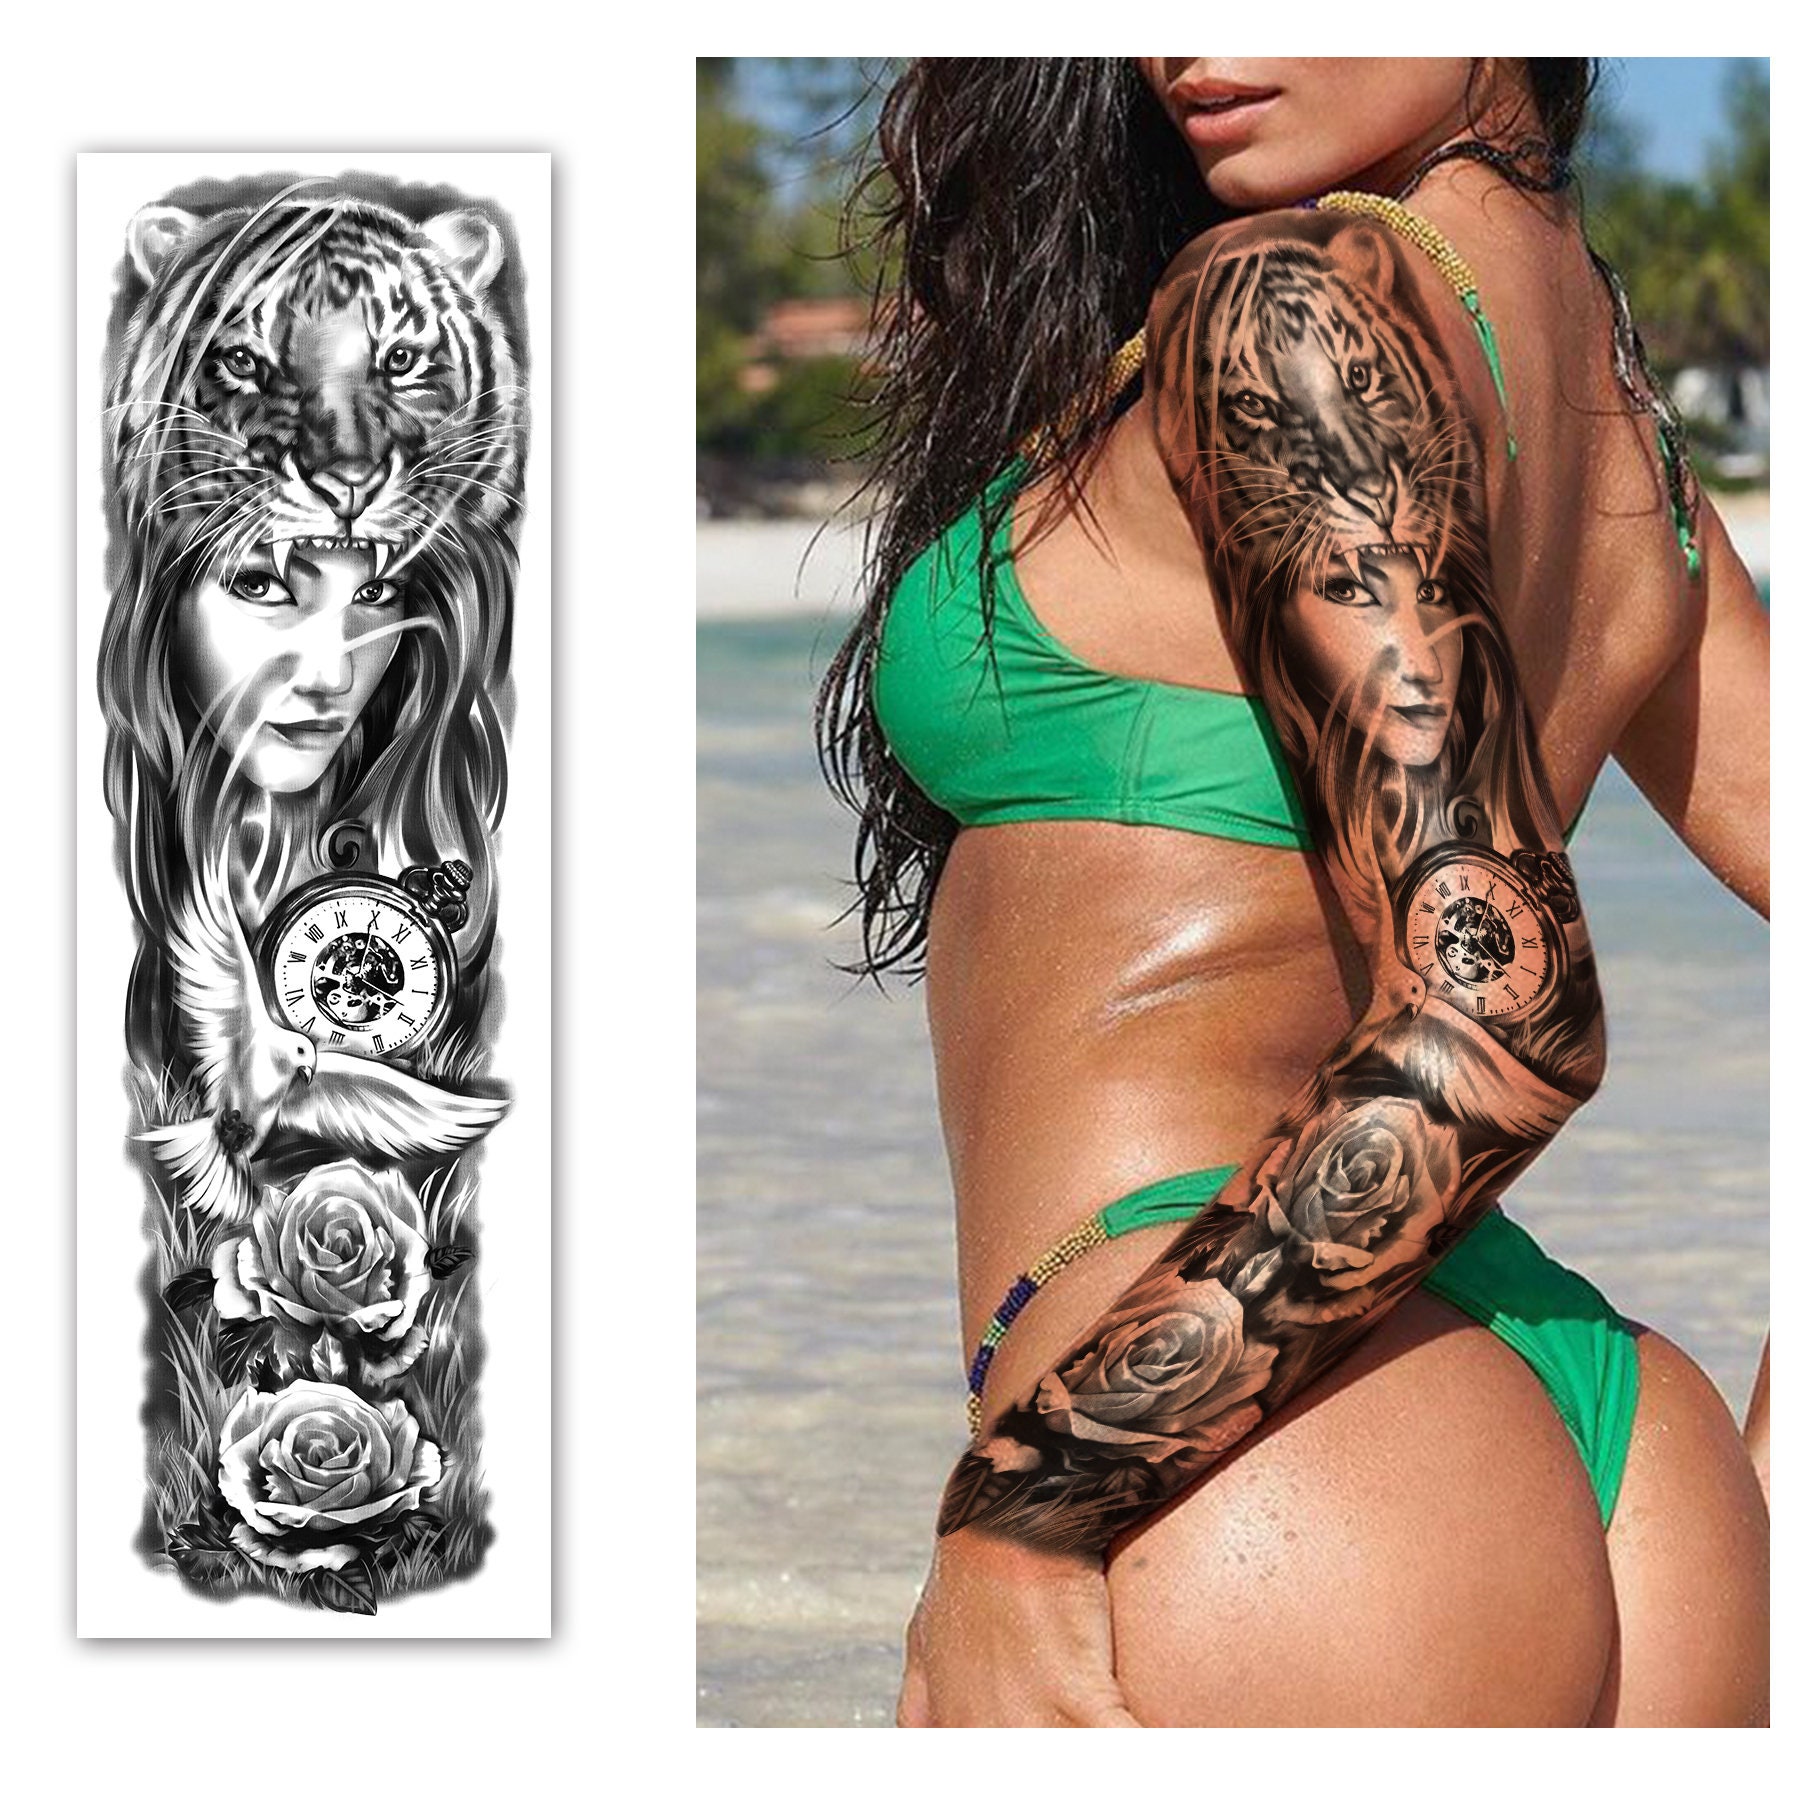 HOWAF Tatuaggi temporanei impermeabili 8 fogli extra large tatuaggi finti  braccio completo e 3 fogli adesivi tatuaggio mezzo braccio tattoo  temporanei